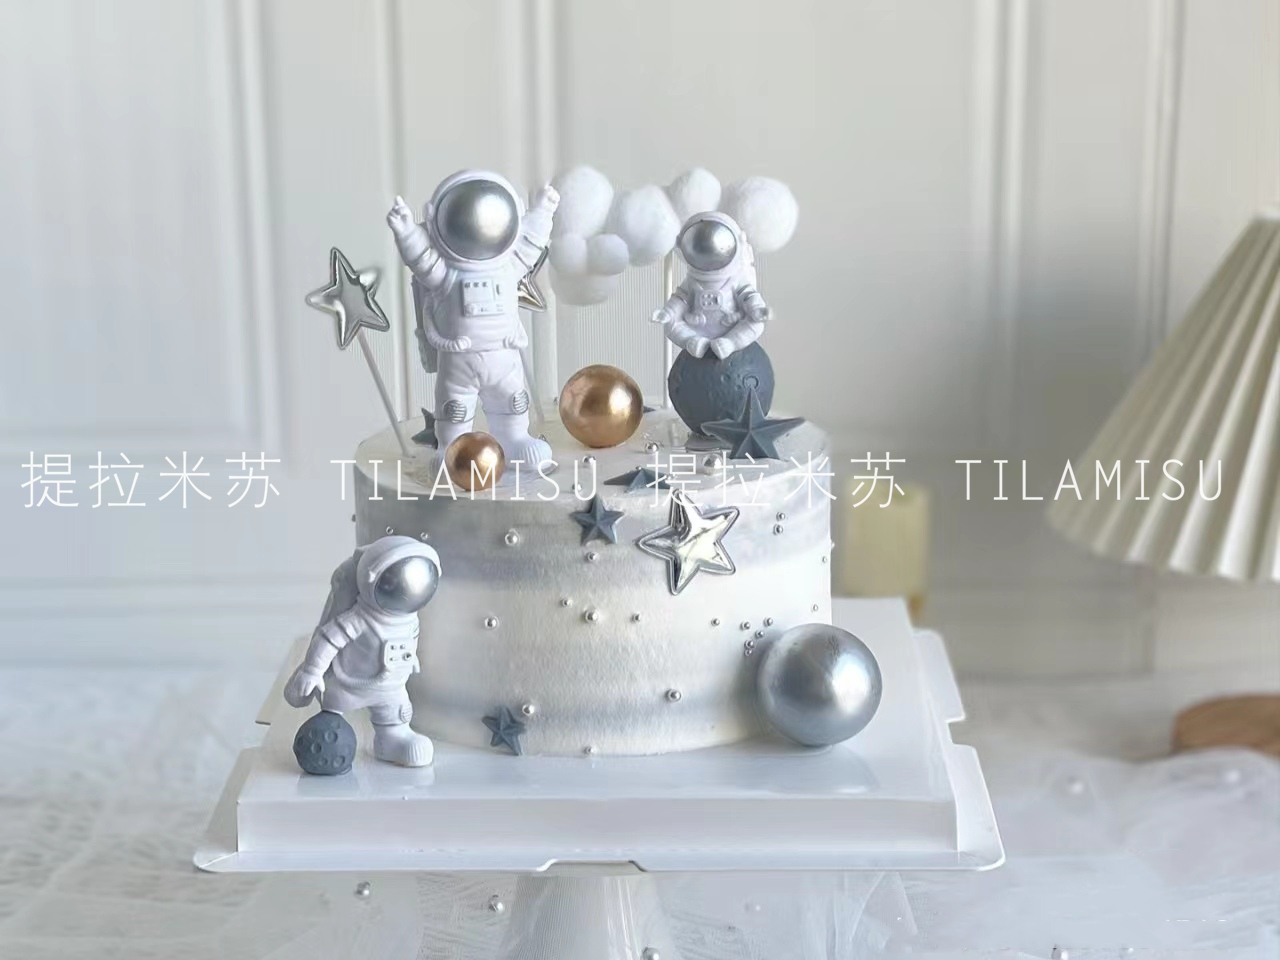 太空宇航员生日蛋糕